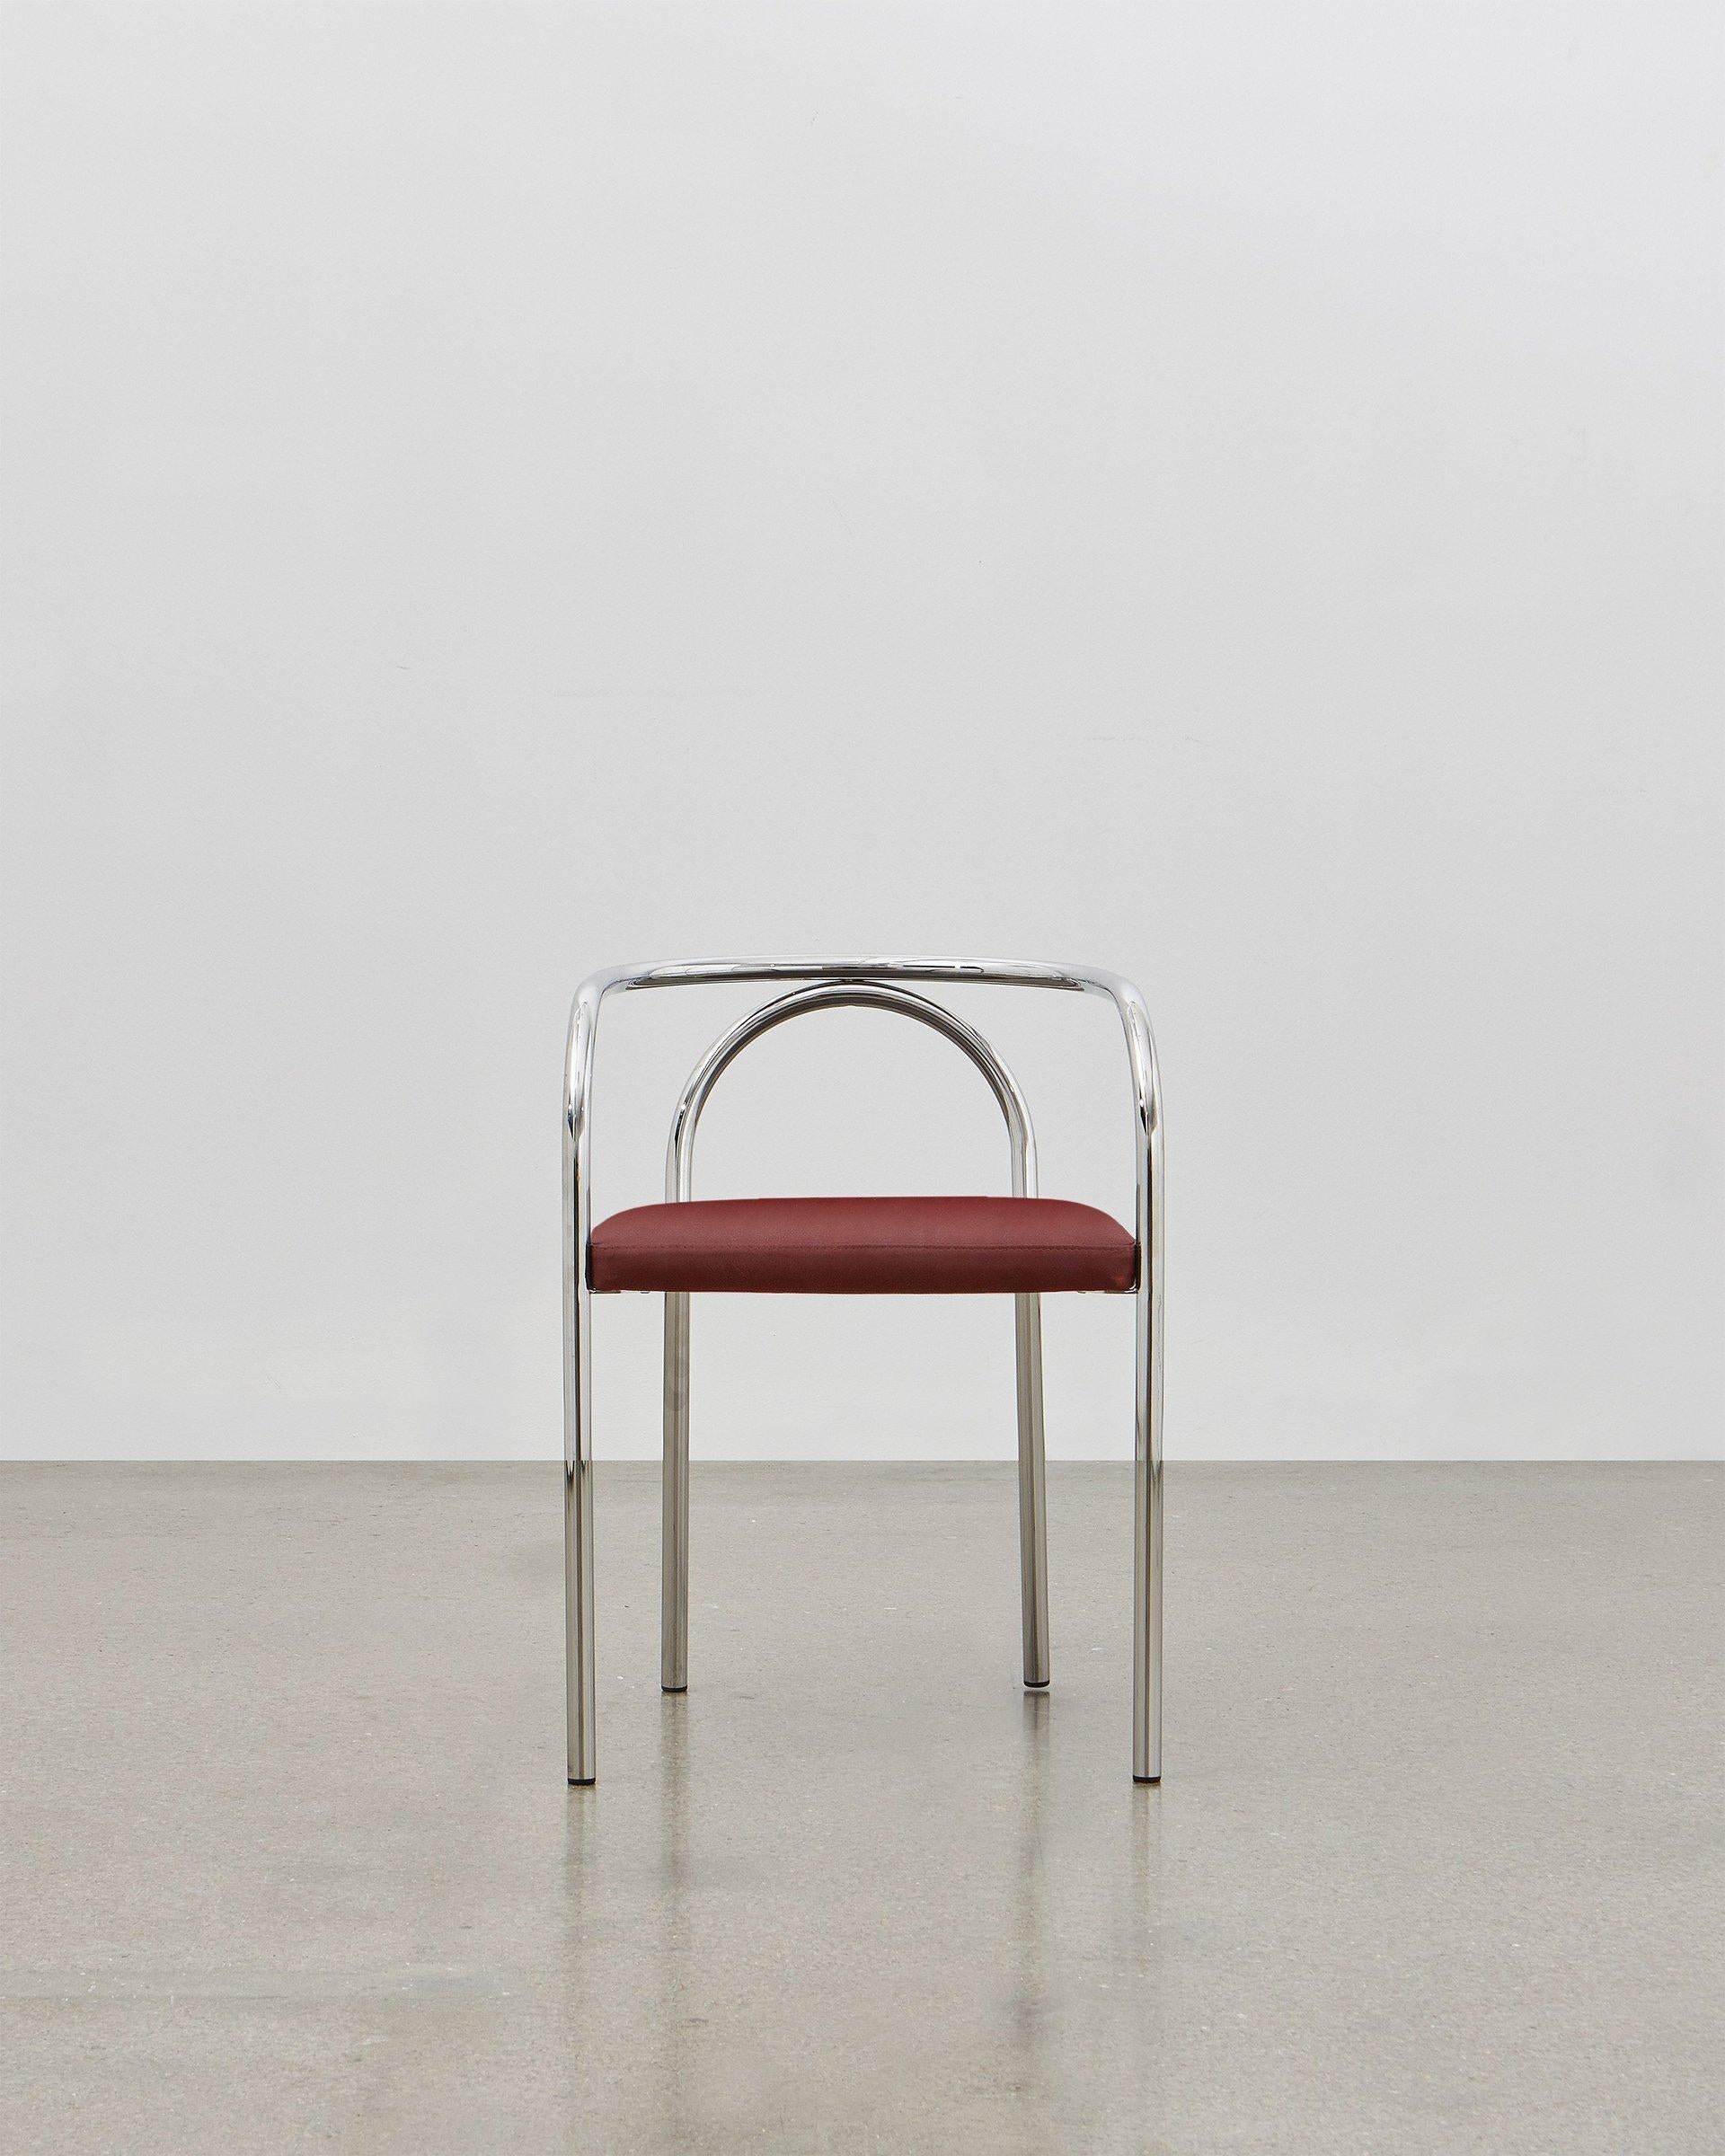 Mit dem PH Chair wollte Poul Henningsen eine Reihe klassischer Möbelentwürfe neu erfinden, die traditionell aus Holz gefertigt worden waren, wie zum Beispiel den häufig anzutreffenden Bistrostuhl